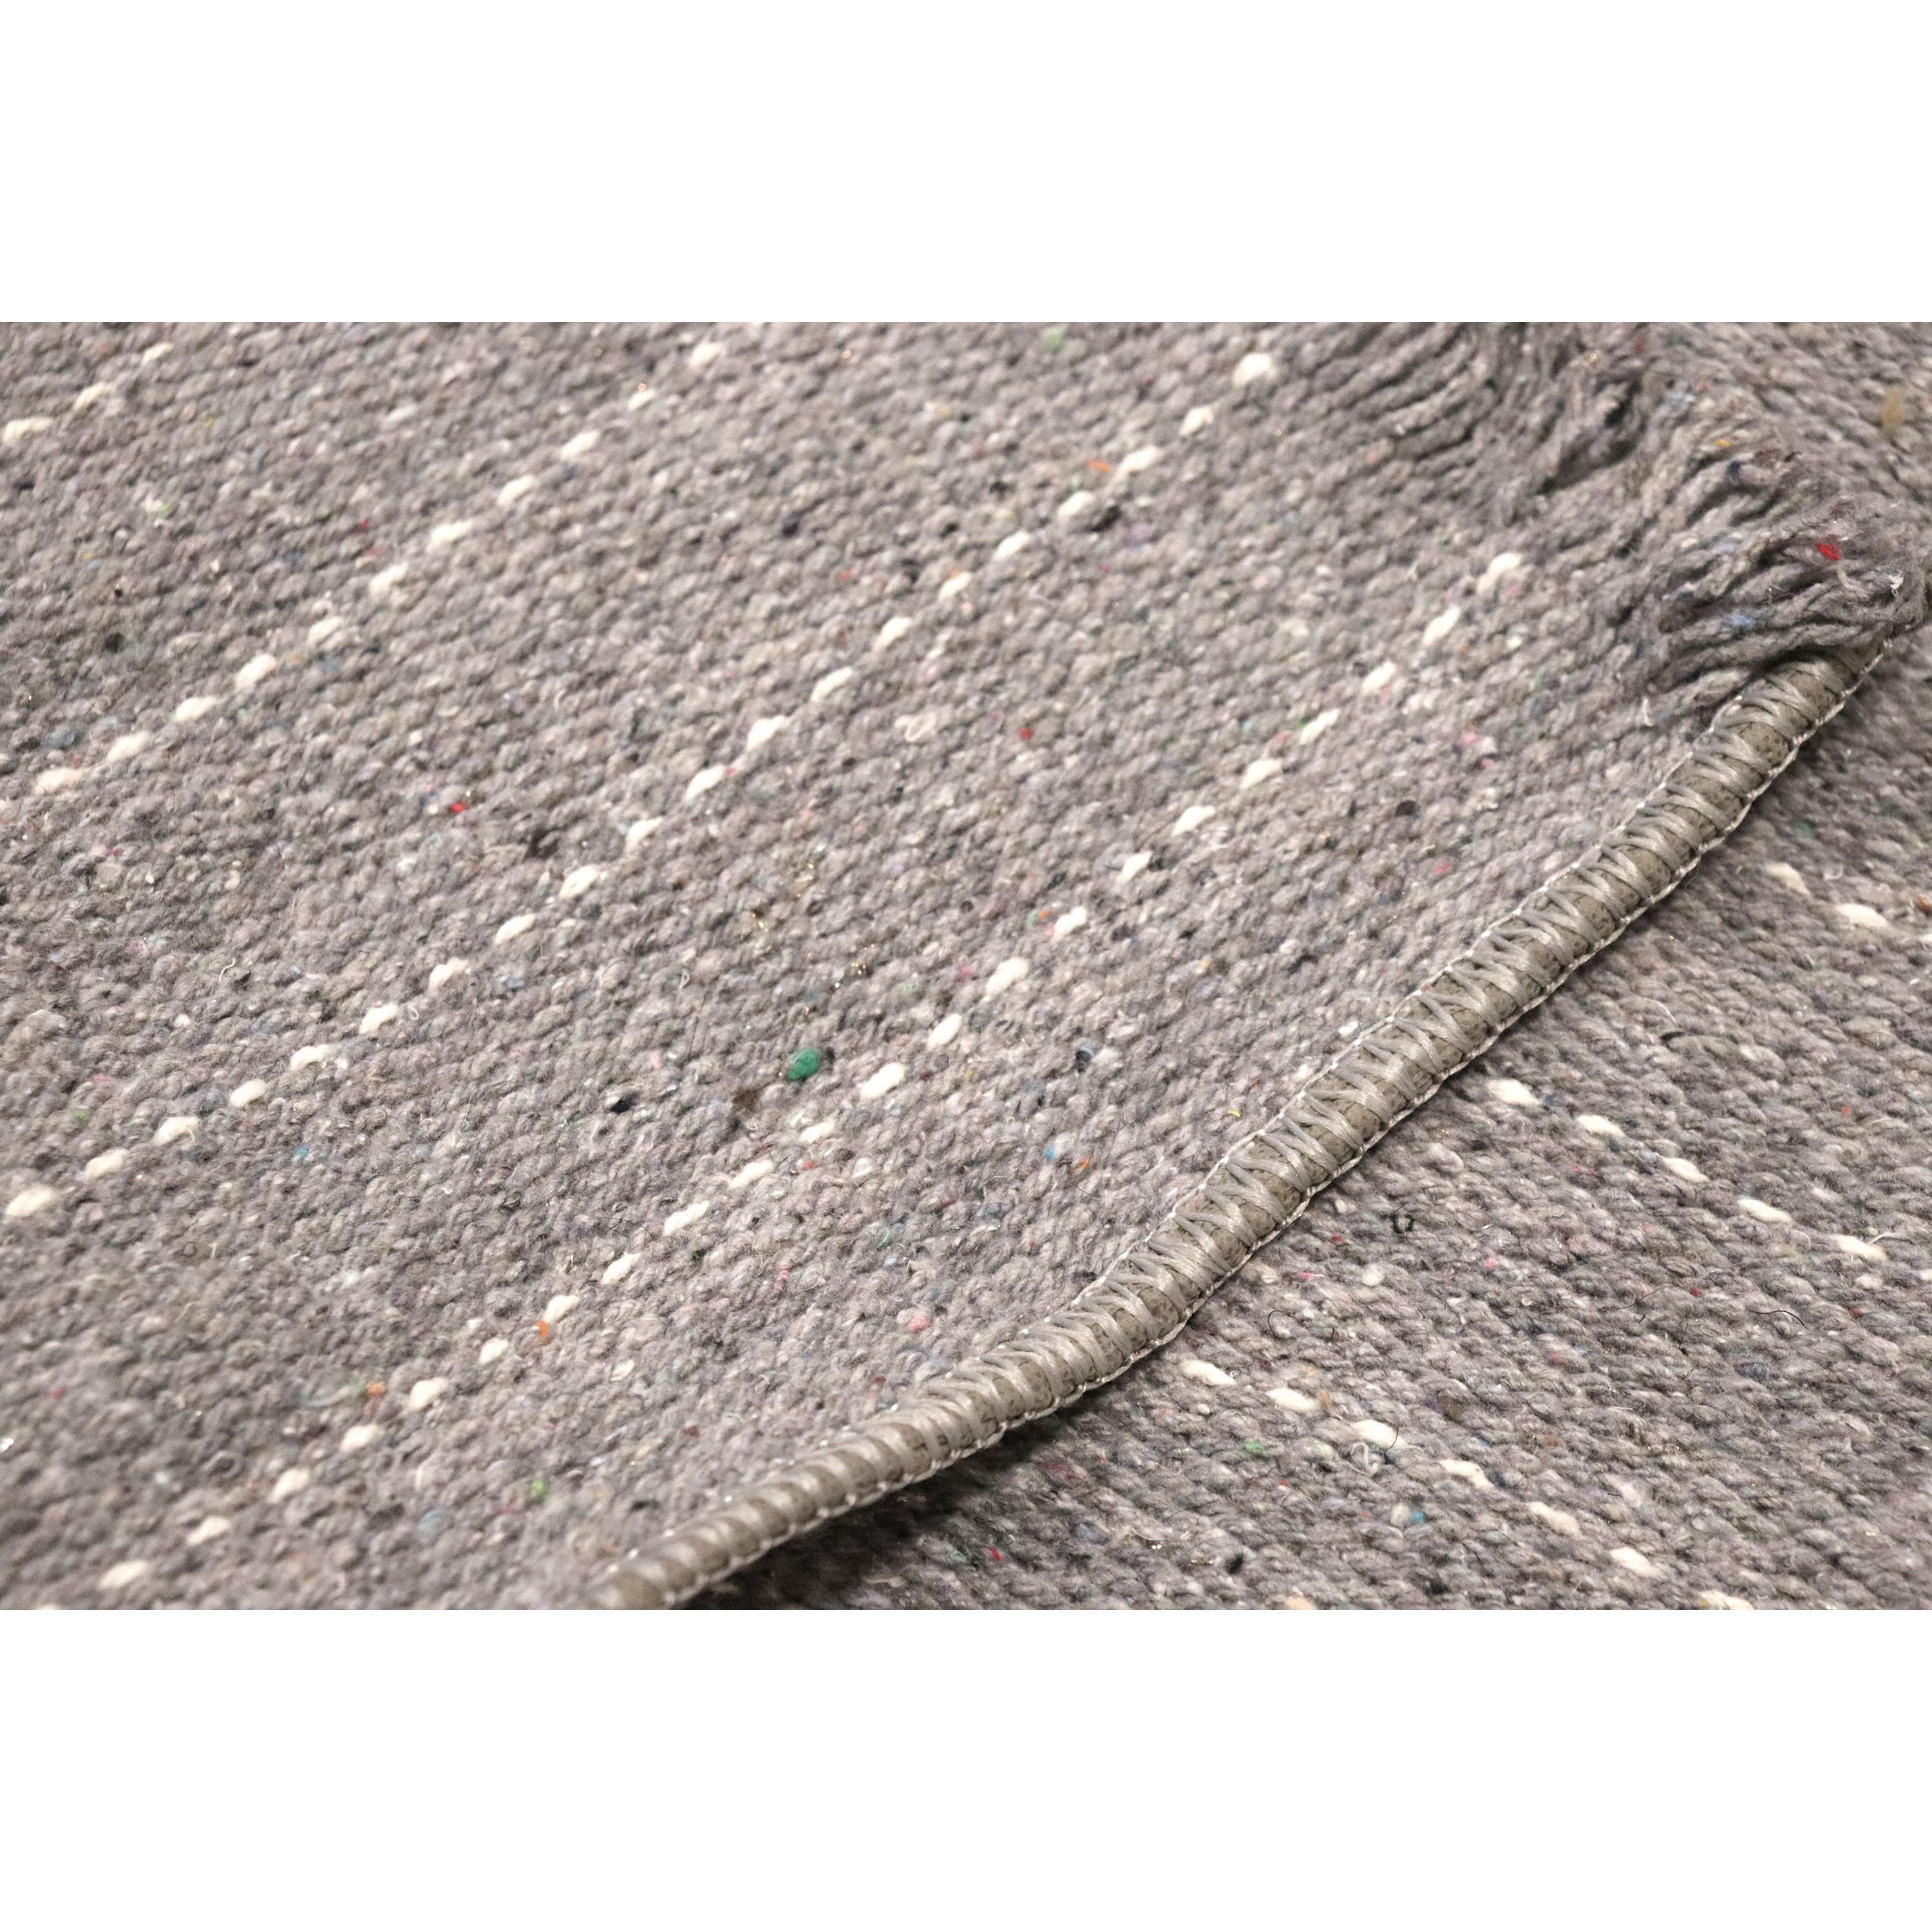 Ковер универсальный Izzihome Naturel Rug stripe grey 120х180 см серый (201AKGR004197) - фото 5